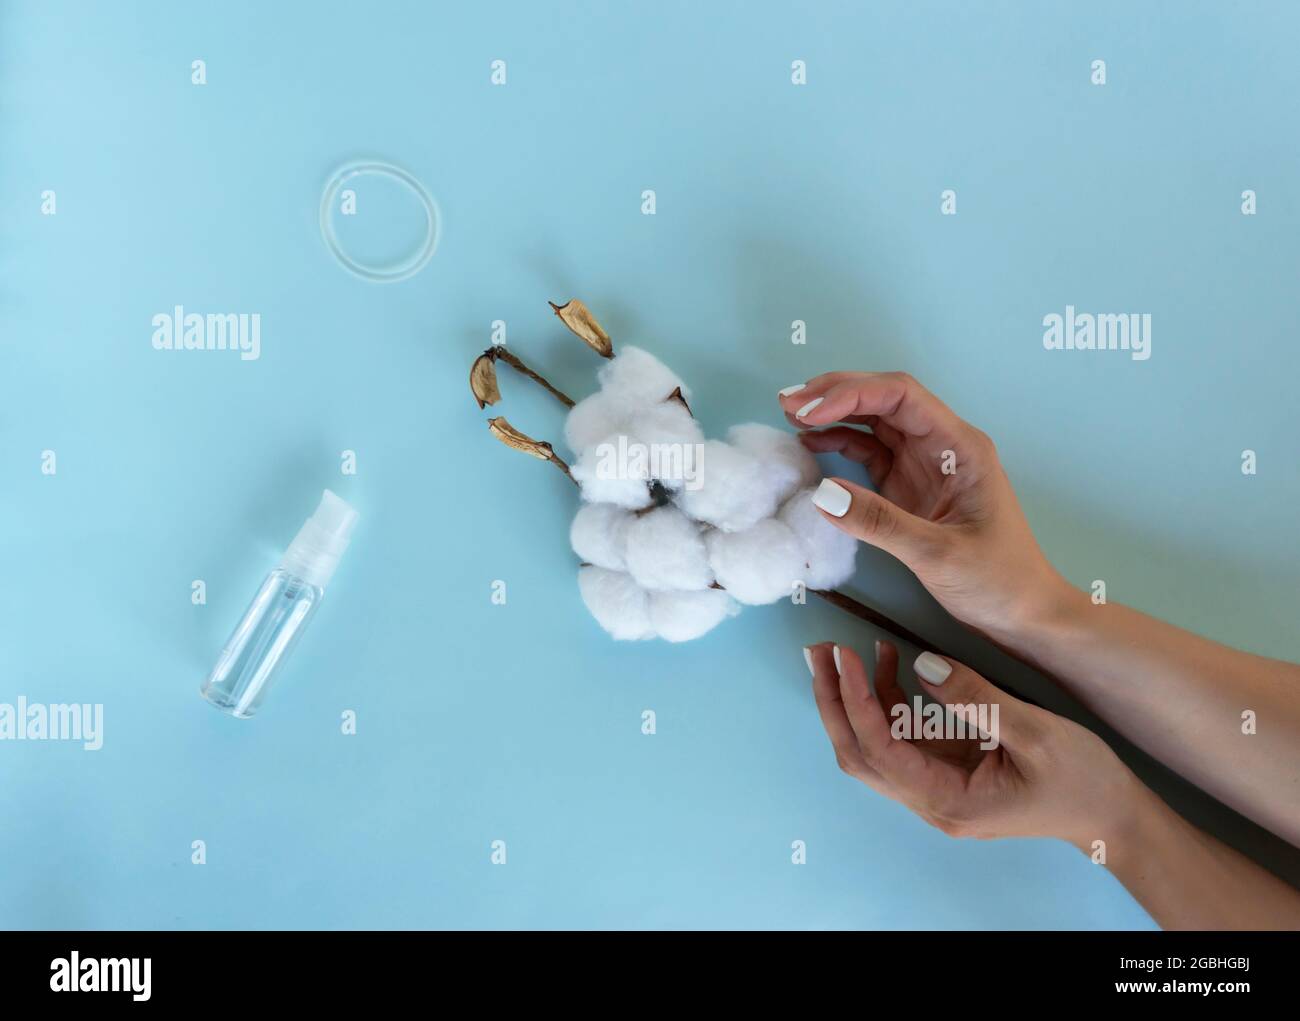 Una mujer sostiene una rama de algodón en sus manos. Cerca hay un anillo  anticonceptivo y un lubricante Fotografía de stock - Alamy